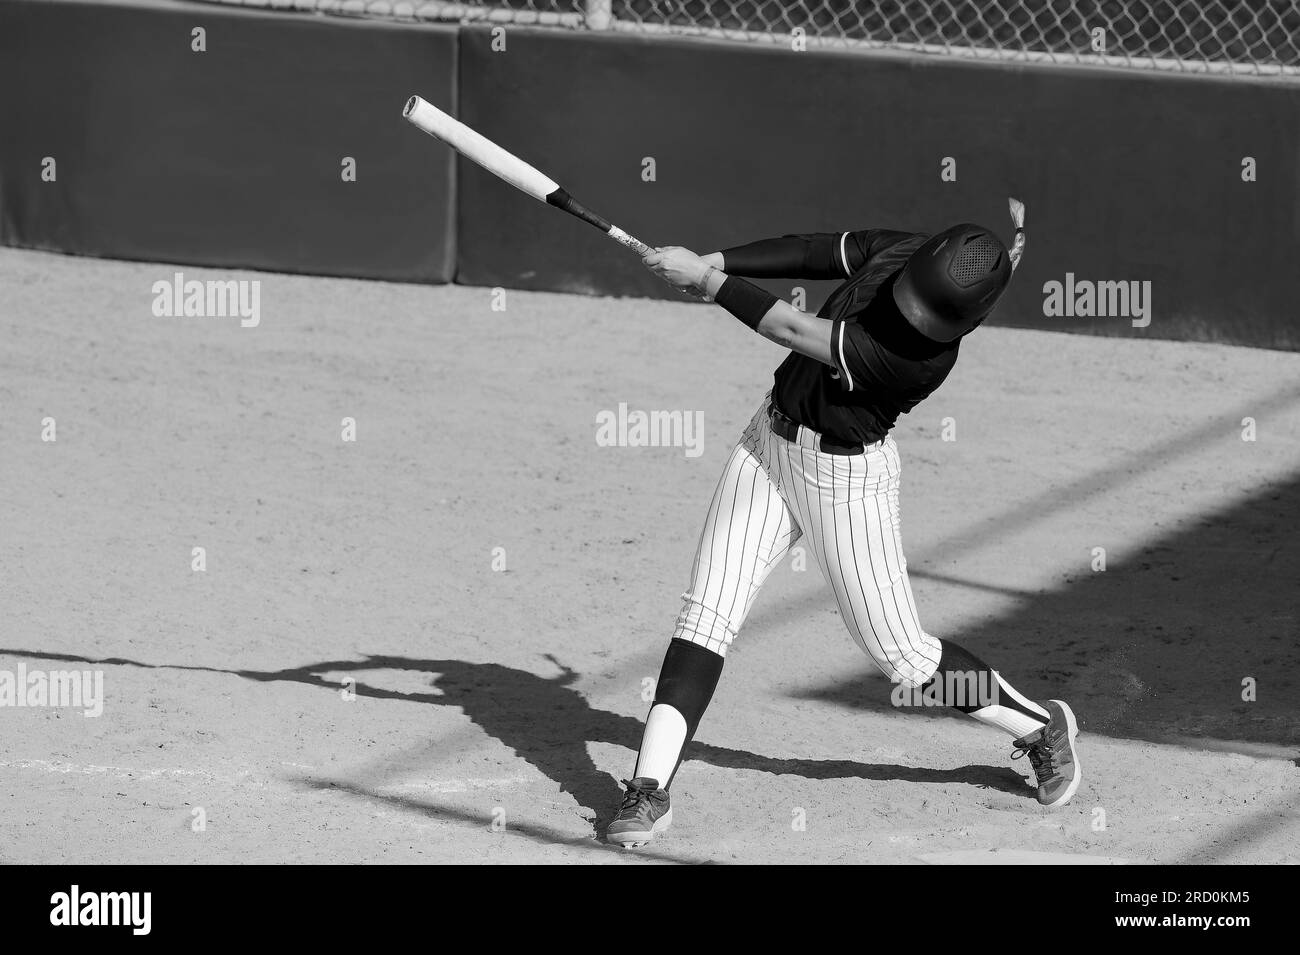 Un joueur de softball de baseball est balancer la batte frappant la balle noir et blanc Banque D'Images